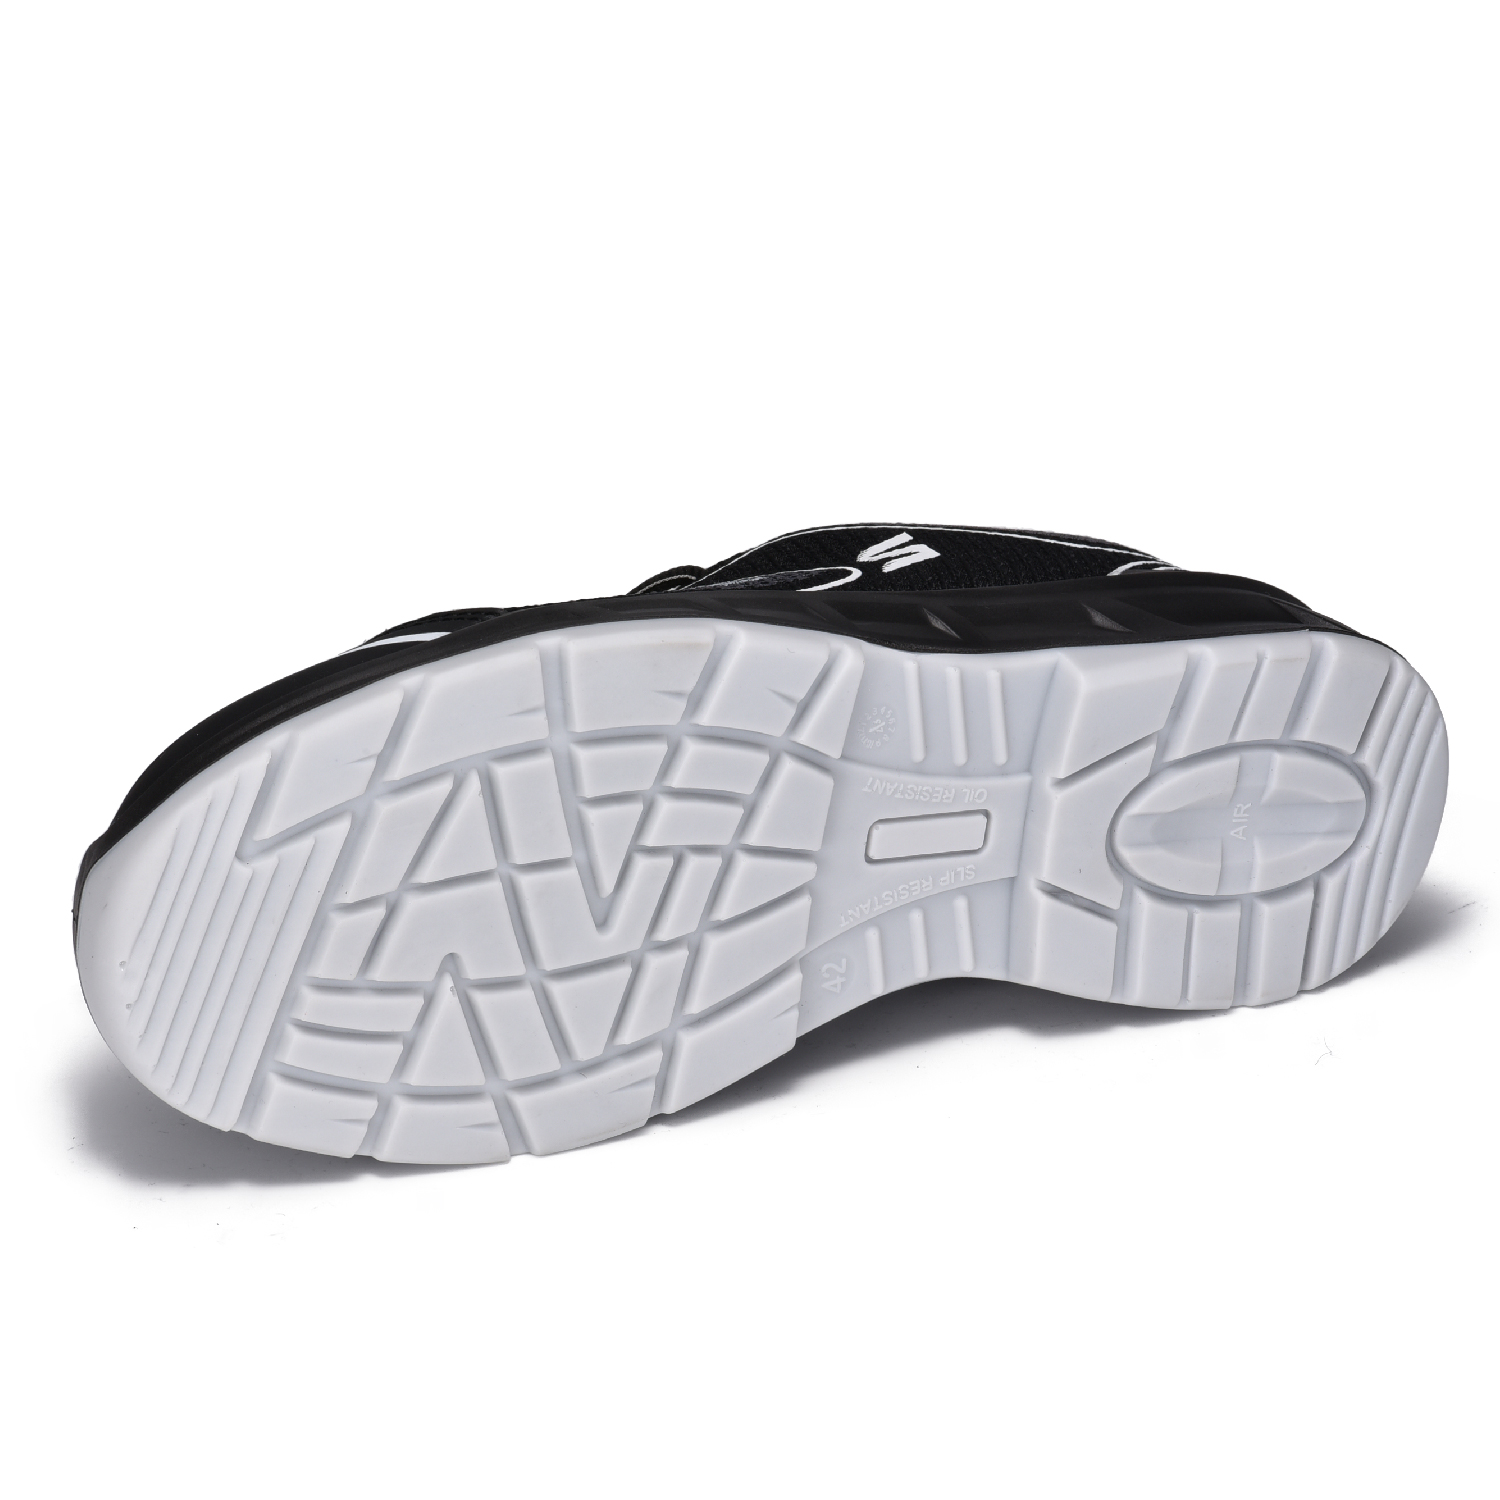 Chaussures de sécurité légères et respirantes en tissu tissé 3D L-7501 gris